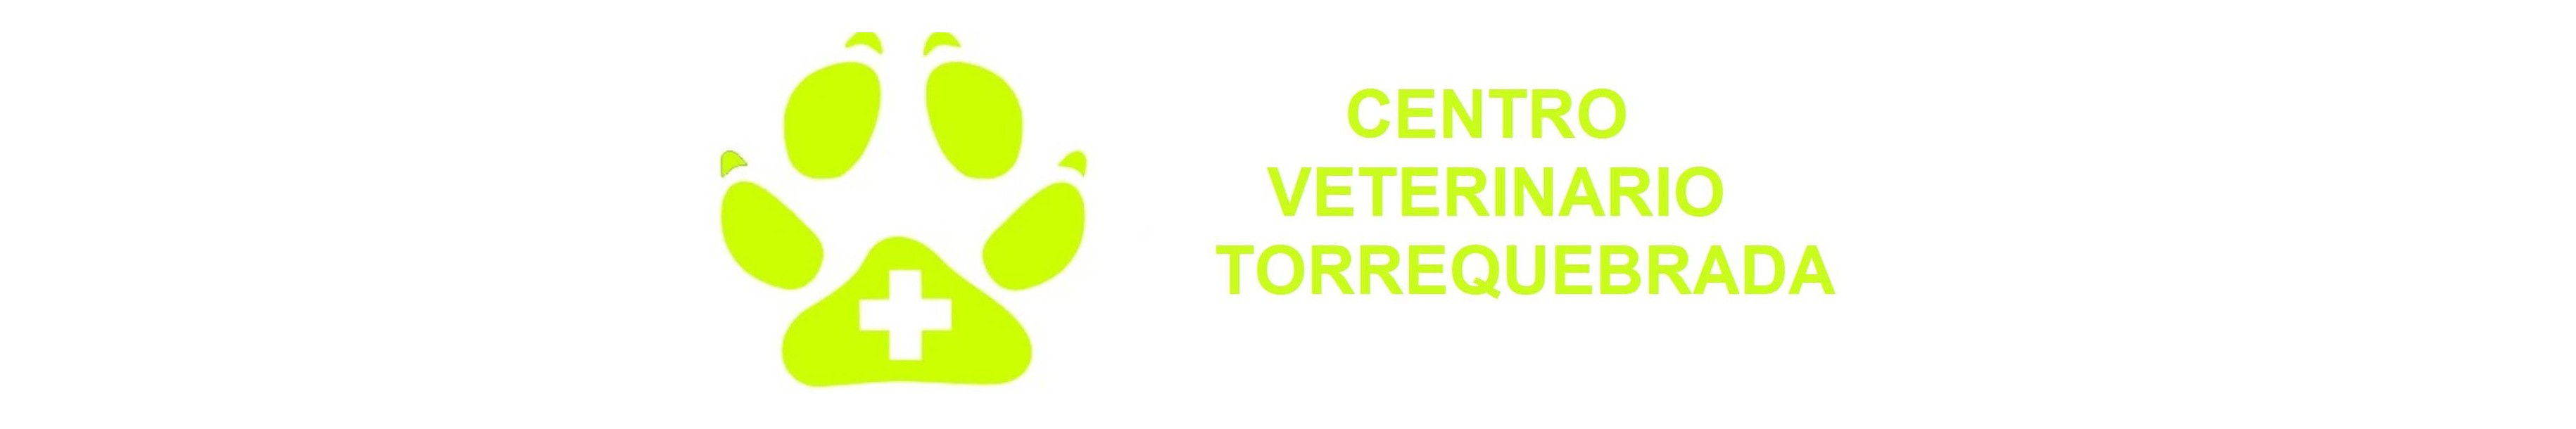 Centro Veterinario Torrequebrada